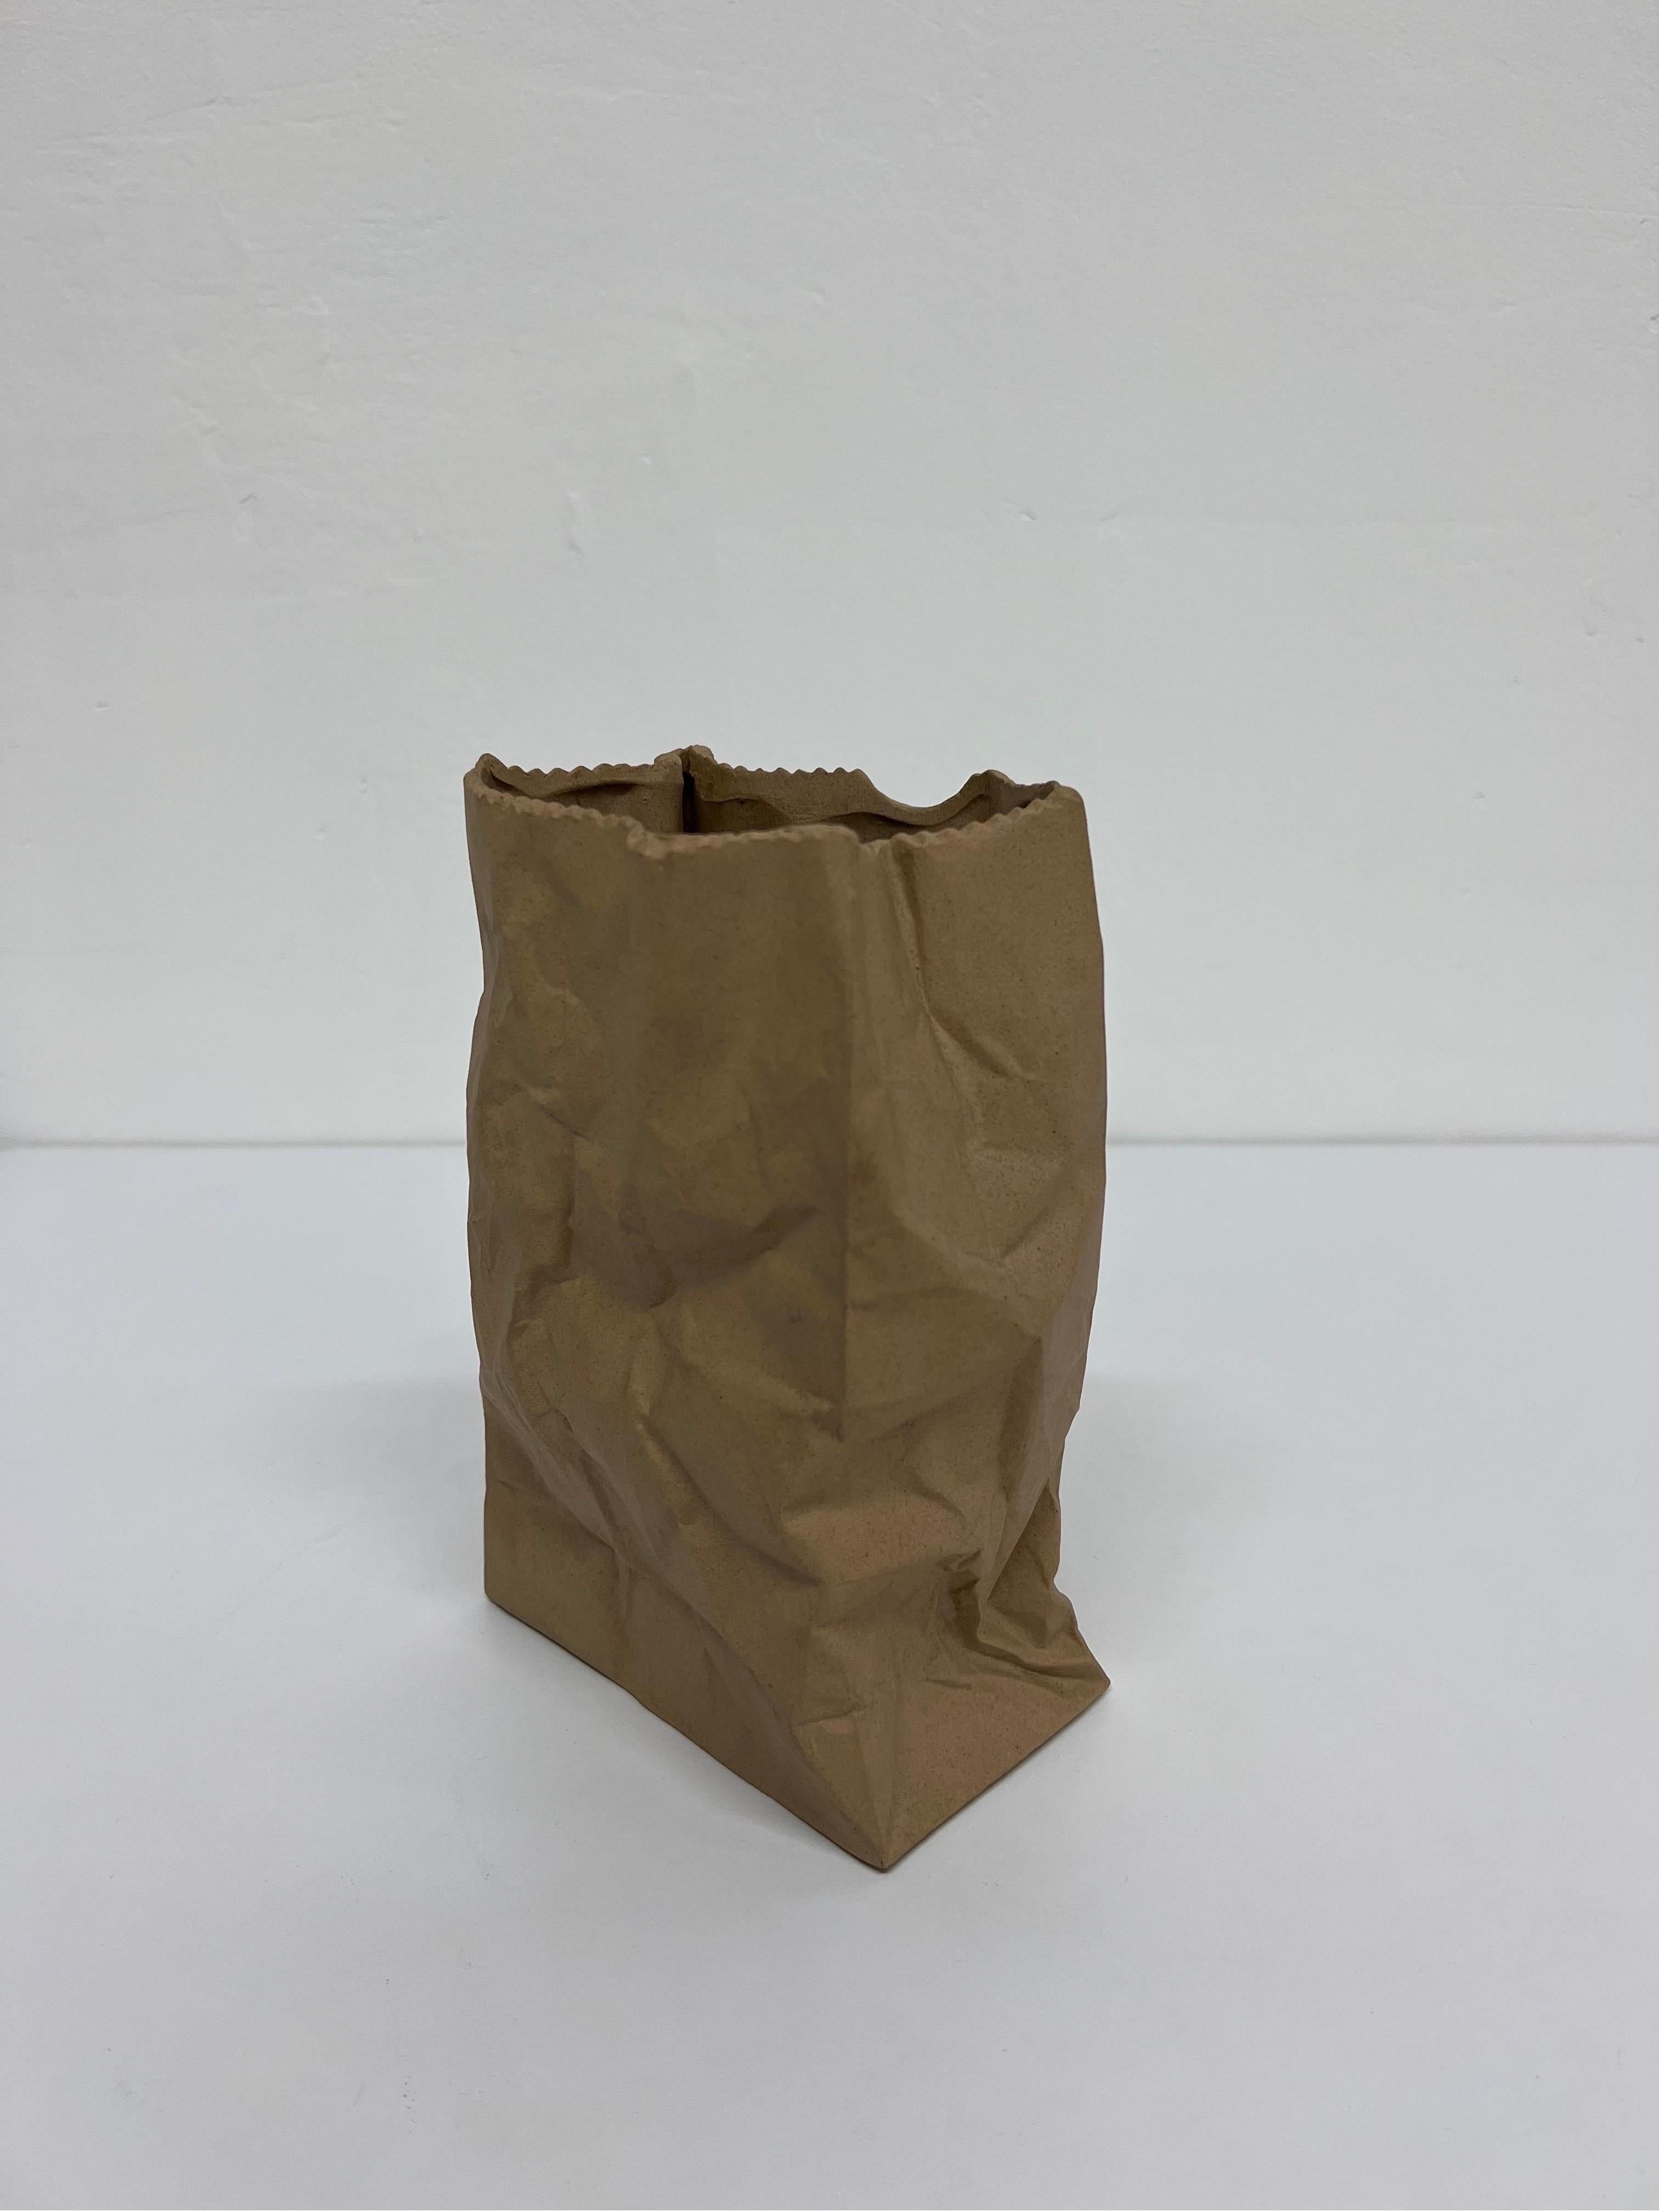 ceramic brown paper bag vase